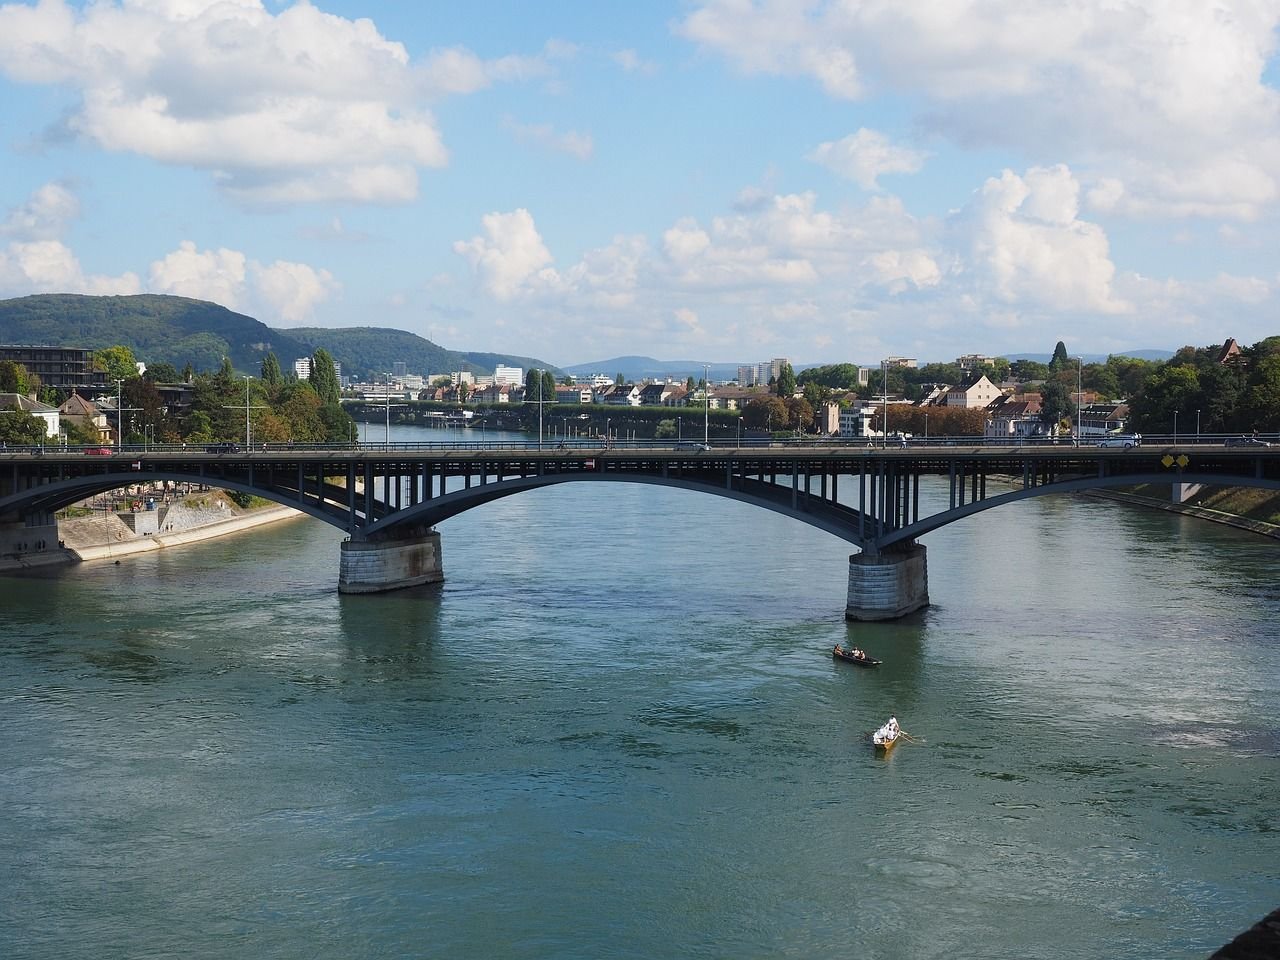 Wettsteinbrücke, Wettstein bridge